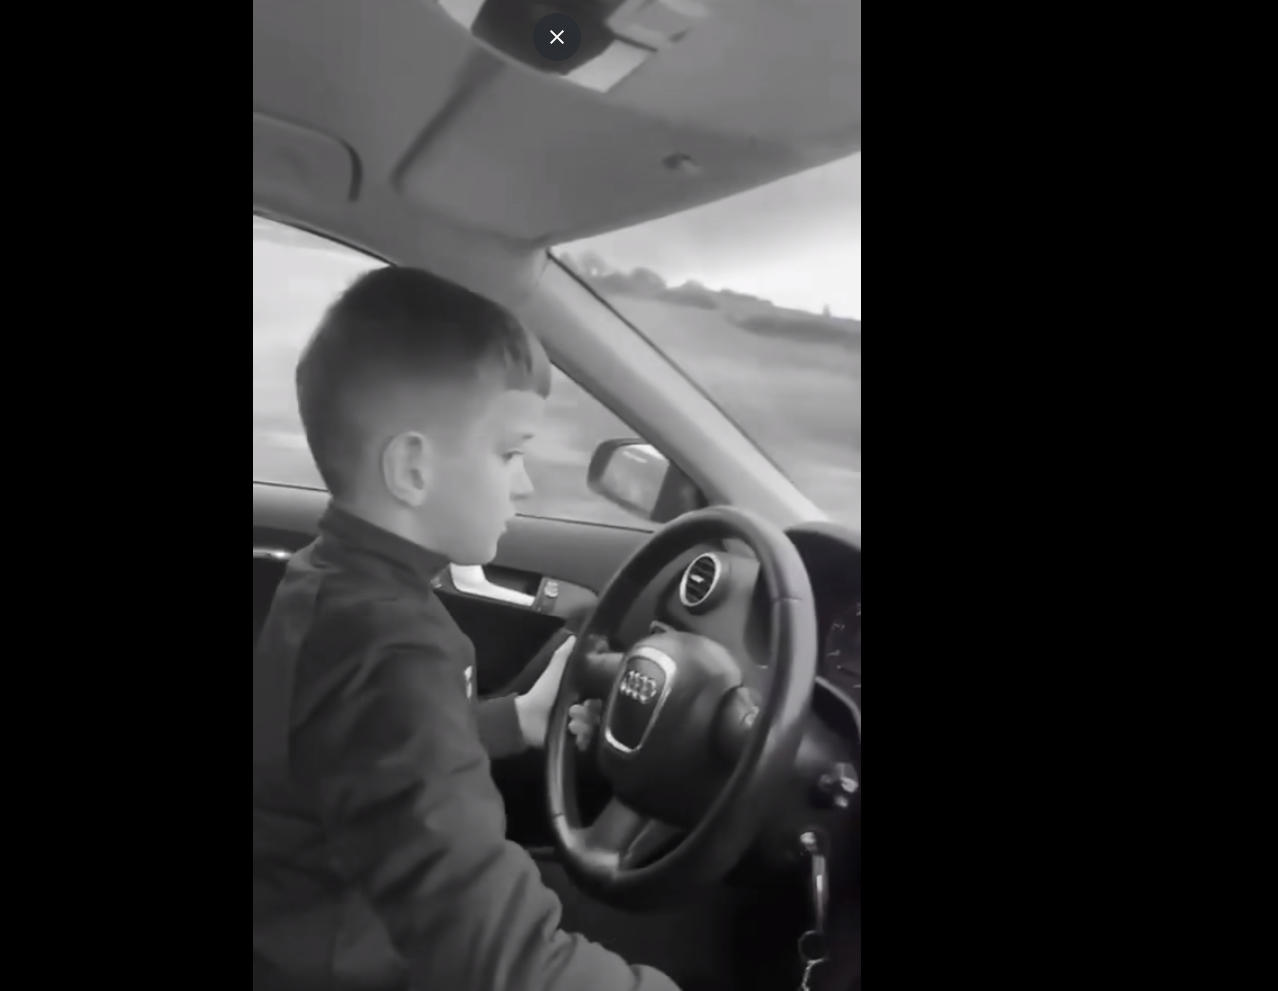 7 vjeçari vozit veturën mbi 100km/h në një rrugë të Kosovës, madje bënë tejkalime të rrezikshme